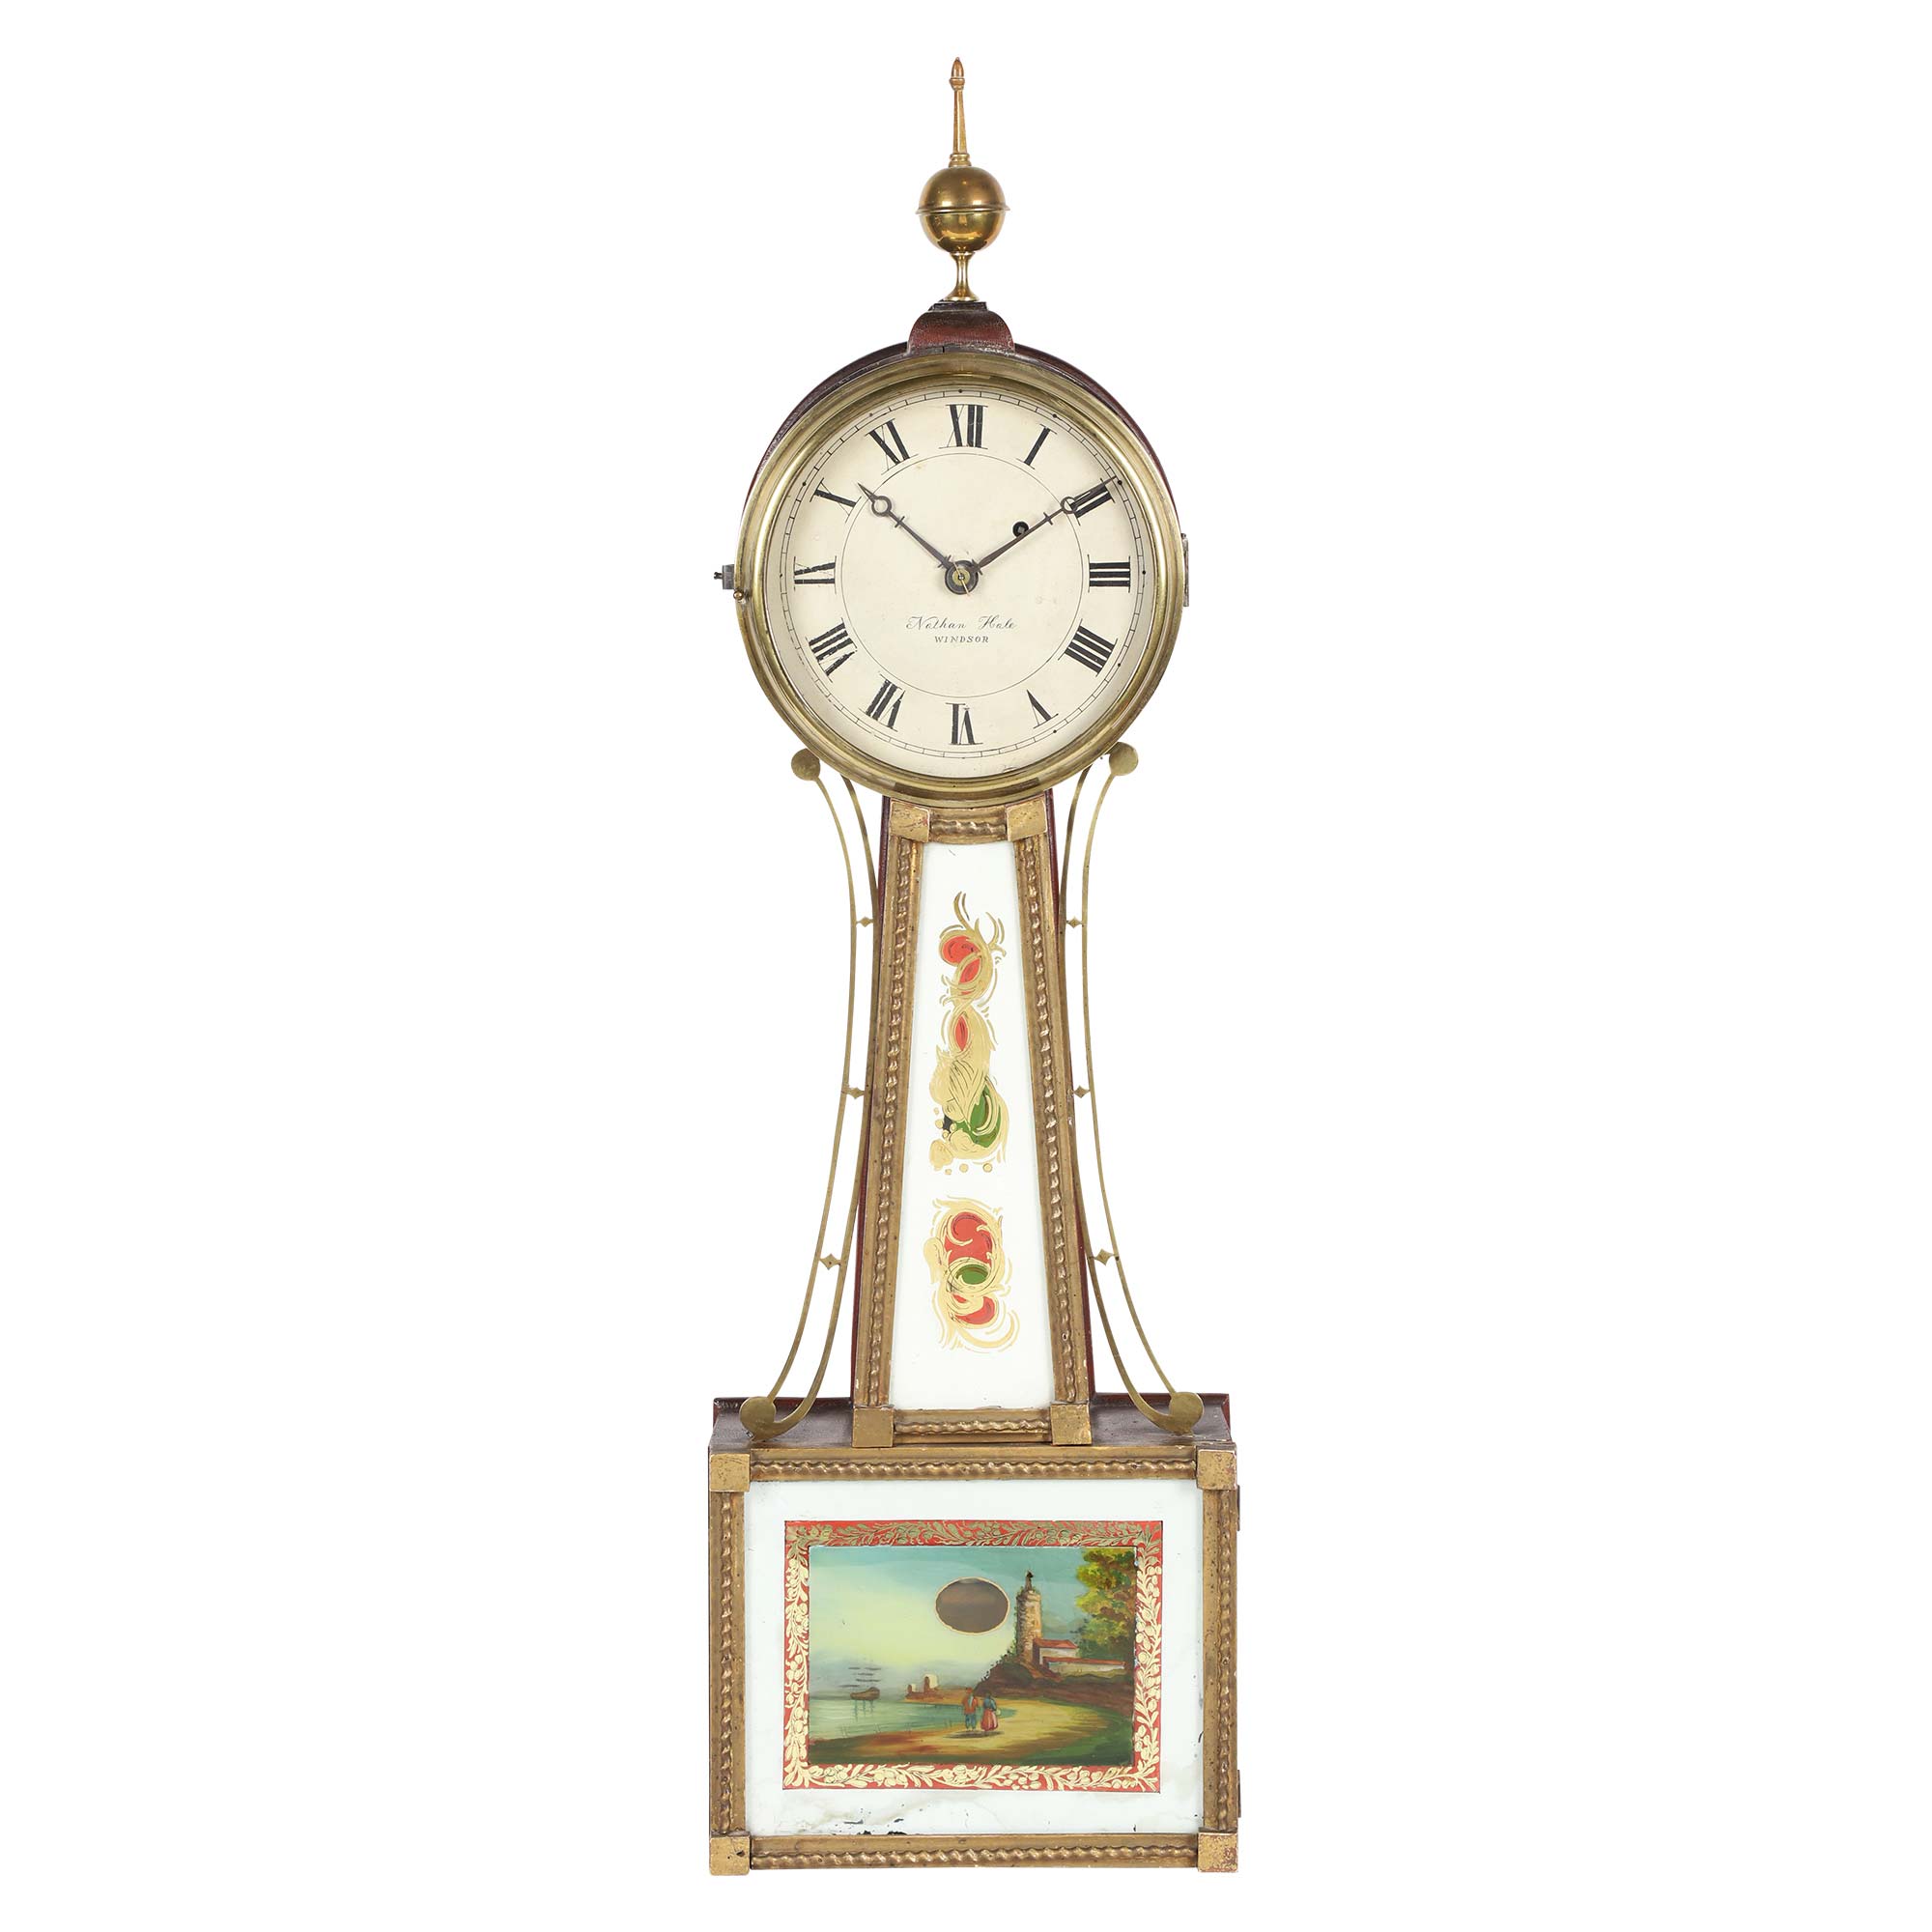 Nathan Hale Vermont banjo clock, USA, 1840, CA$7,080. Image courtesy Miller & Miller